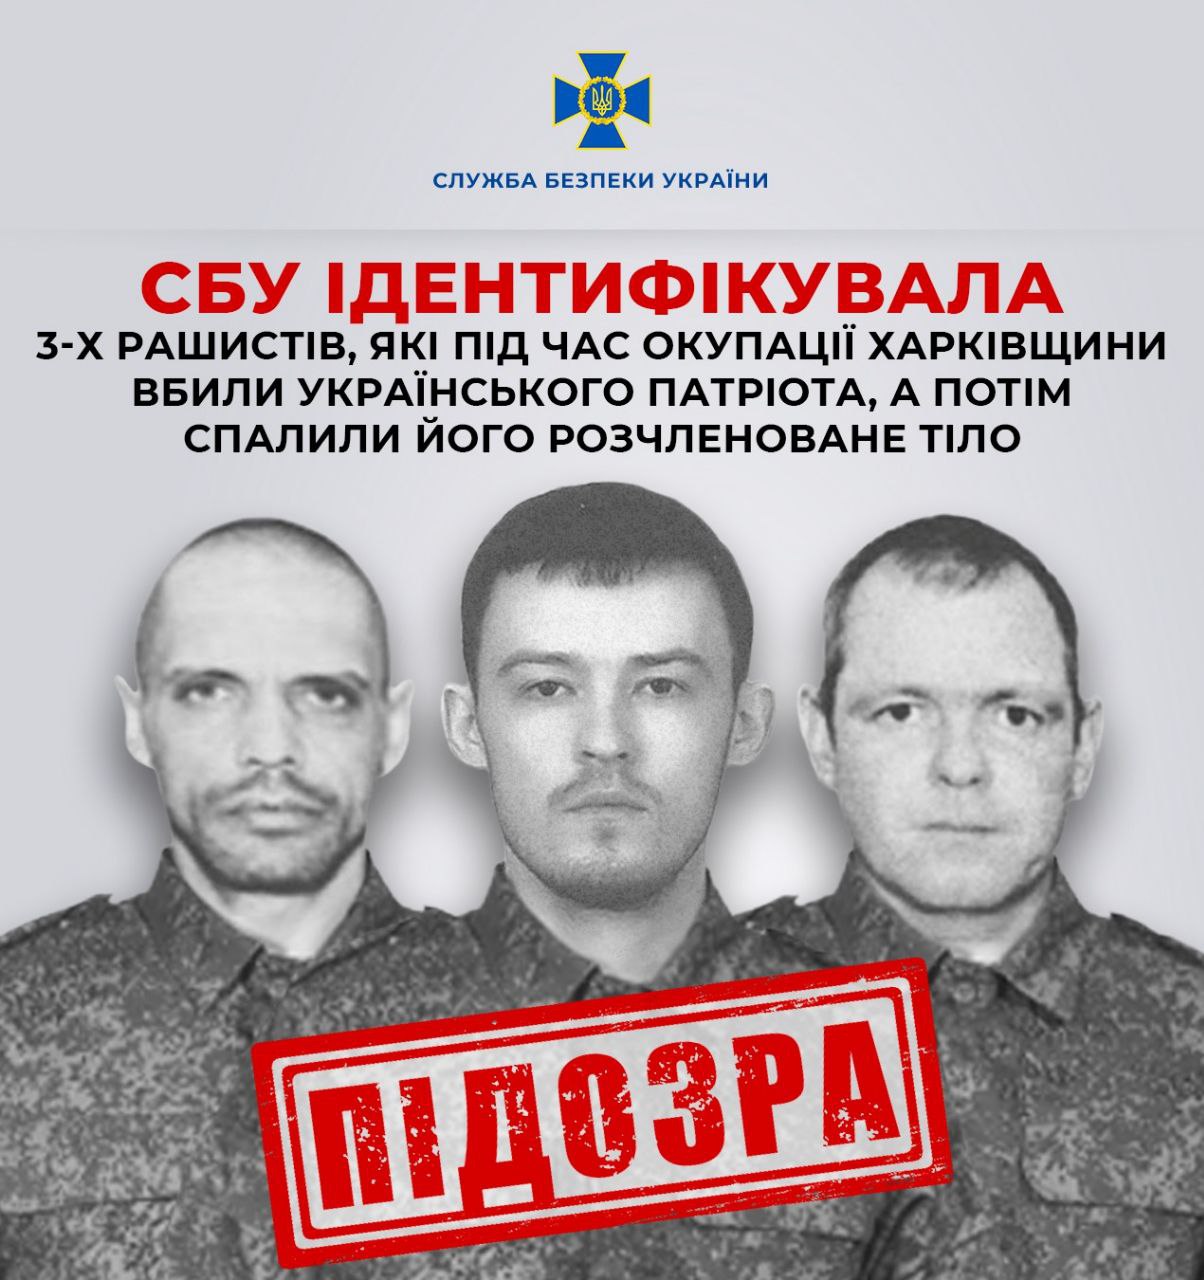 Вбили українського патріота та спалили розчленоване тіло: ідентифіковано трьох рашистів, які діяли на Харківщини